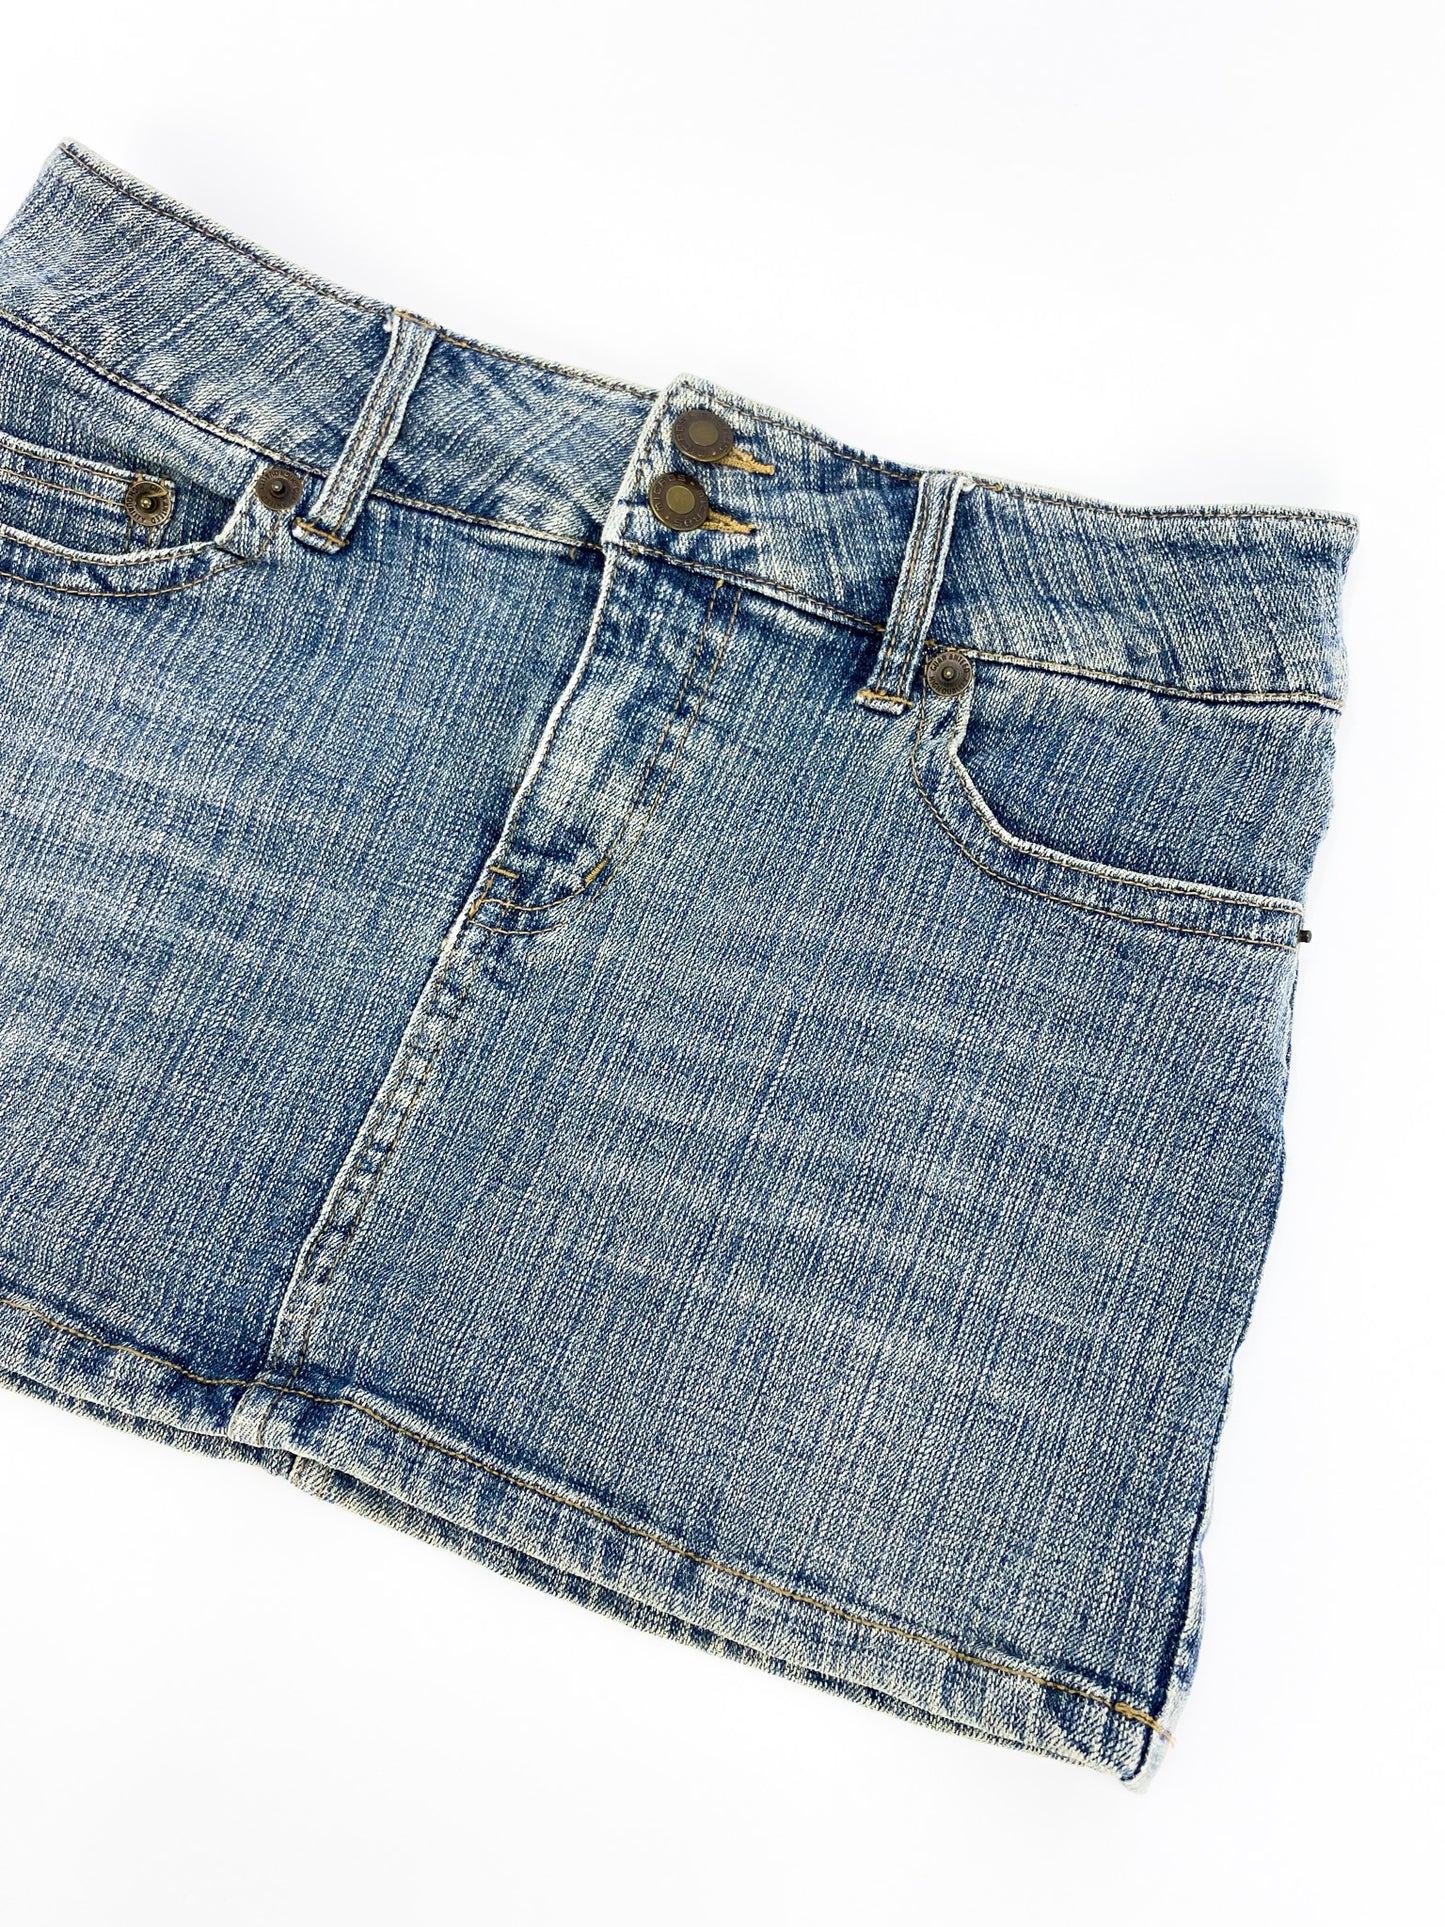 Vintage 00's Light Wash Denim Mini Skirt - S